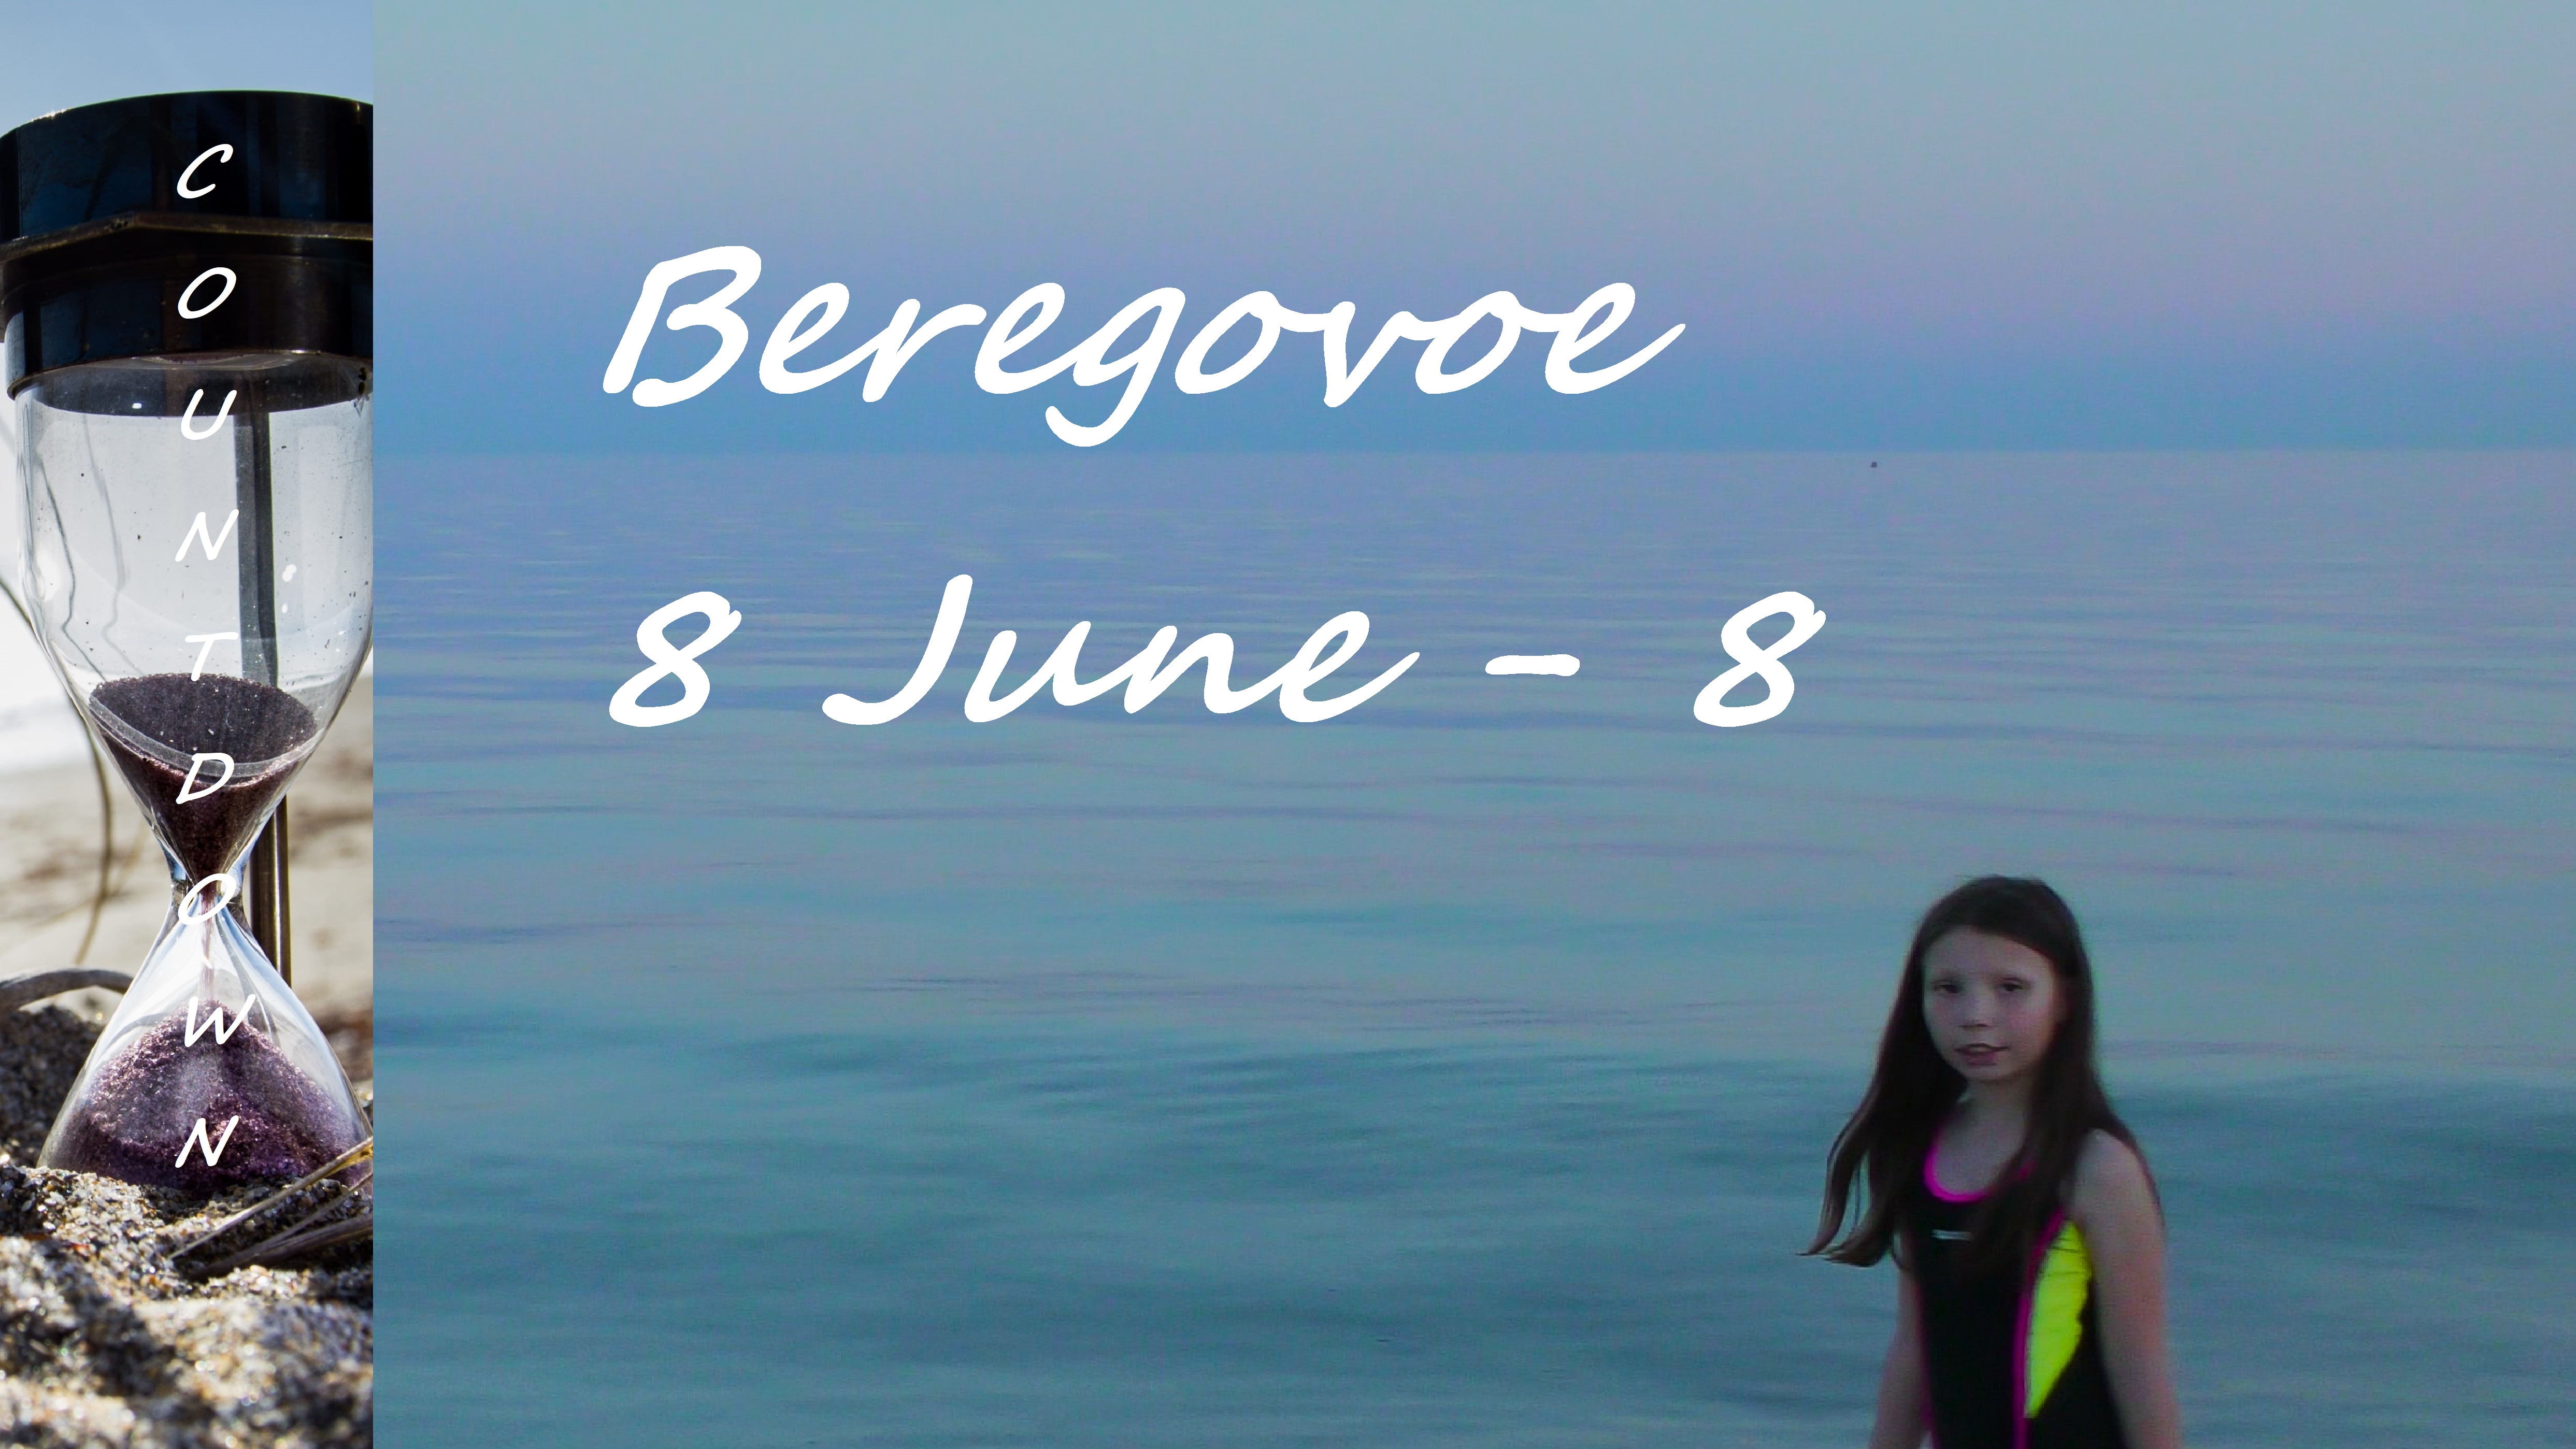 Beregovoe 8 June - 8